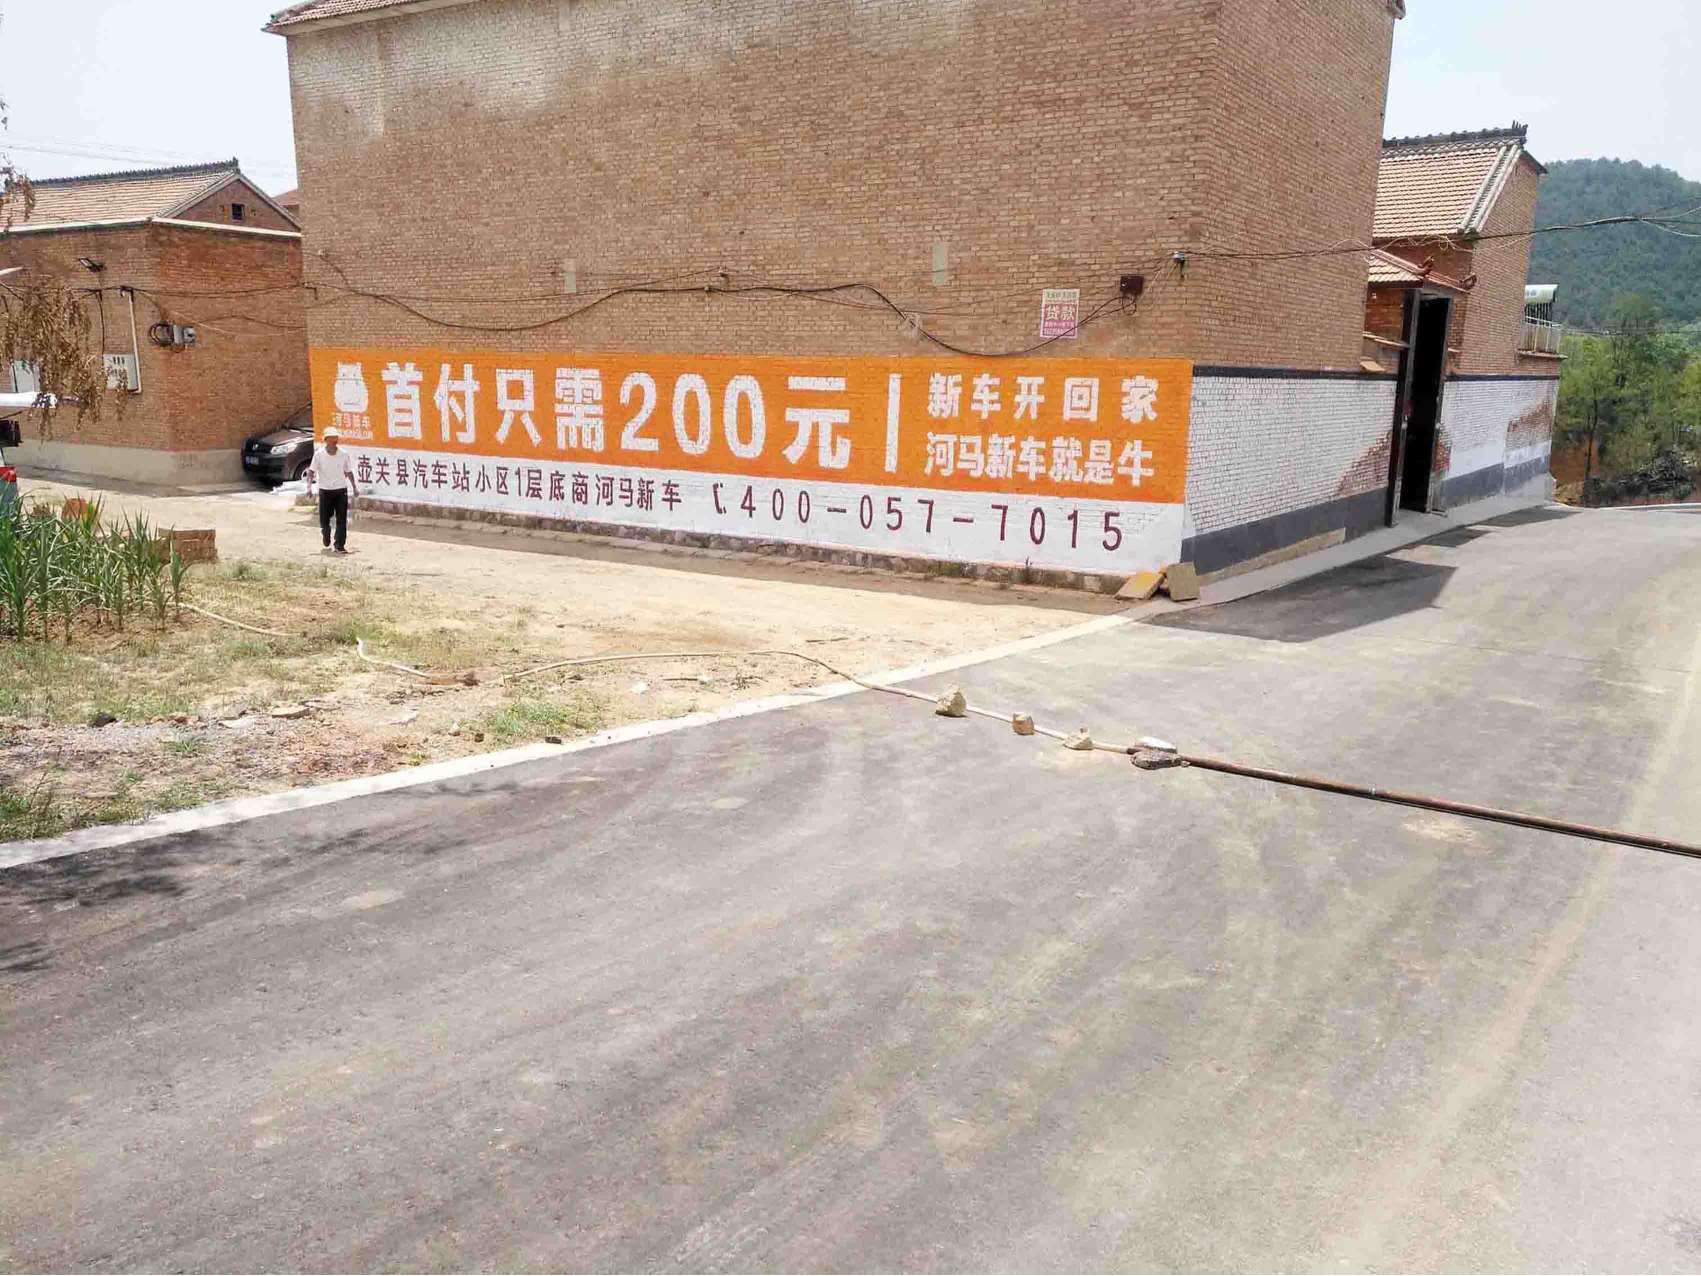 阳泉汽车下乡刷墙广告协助忻州荣威汽车手绘墙体广告